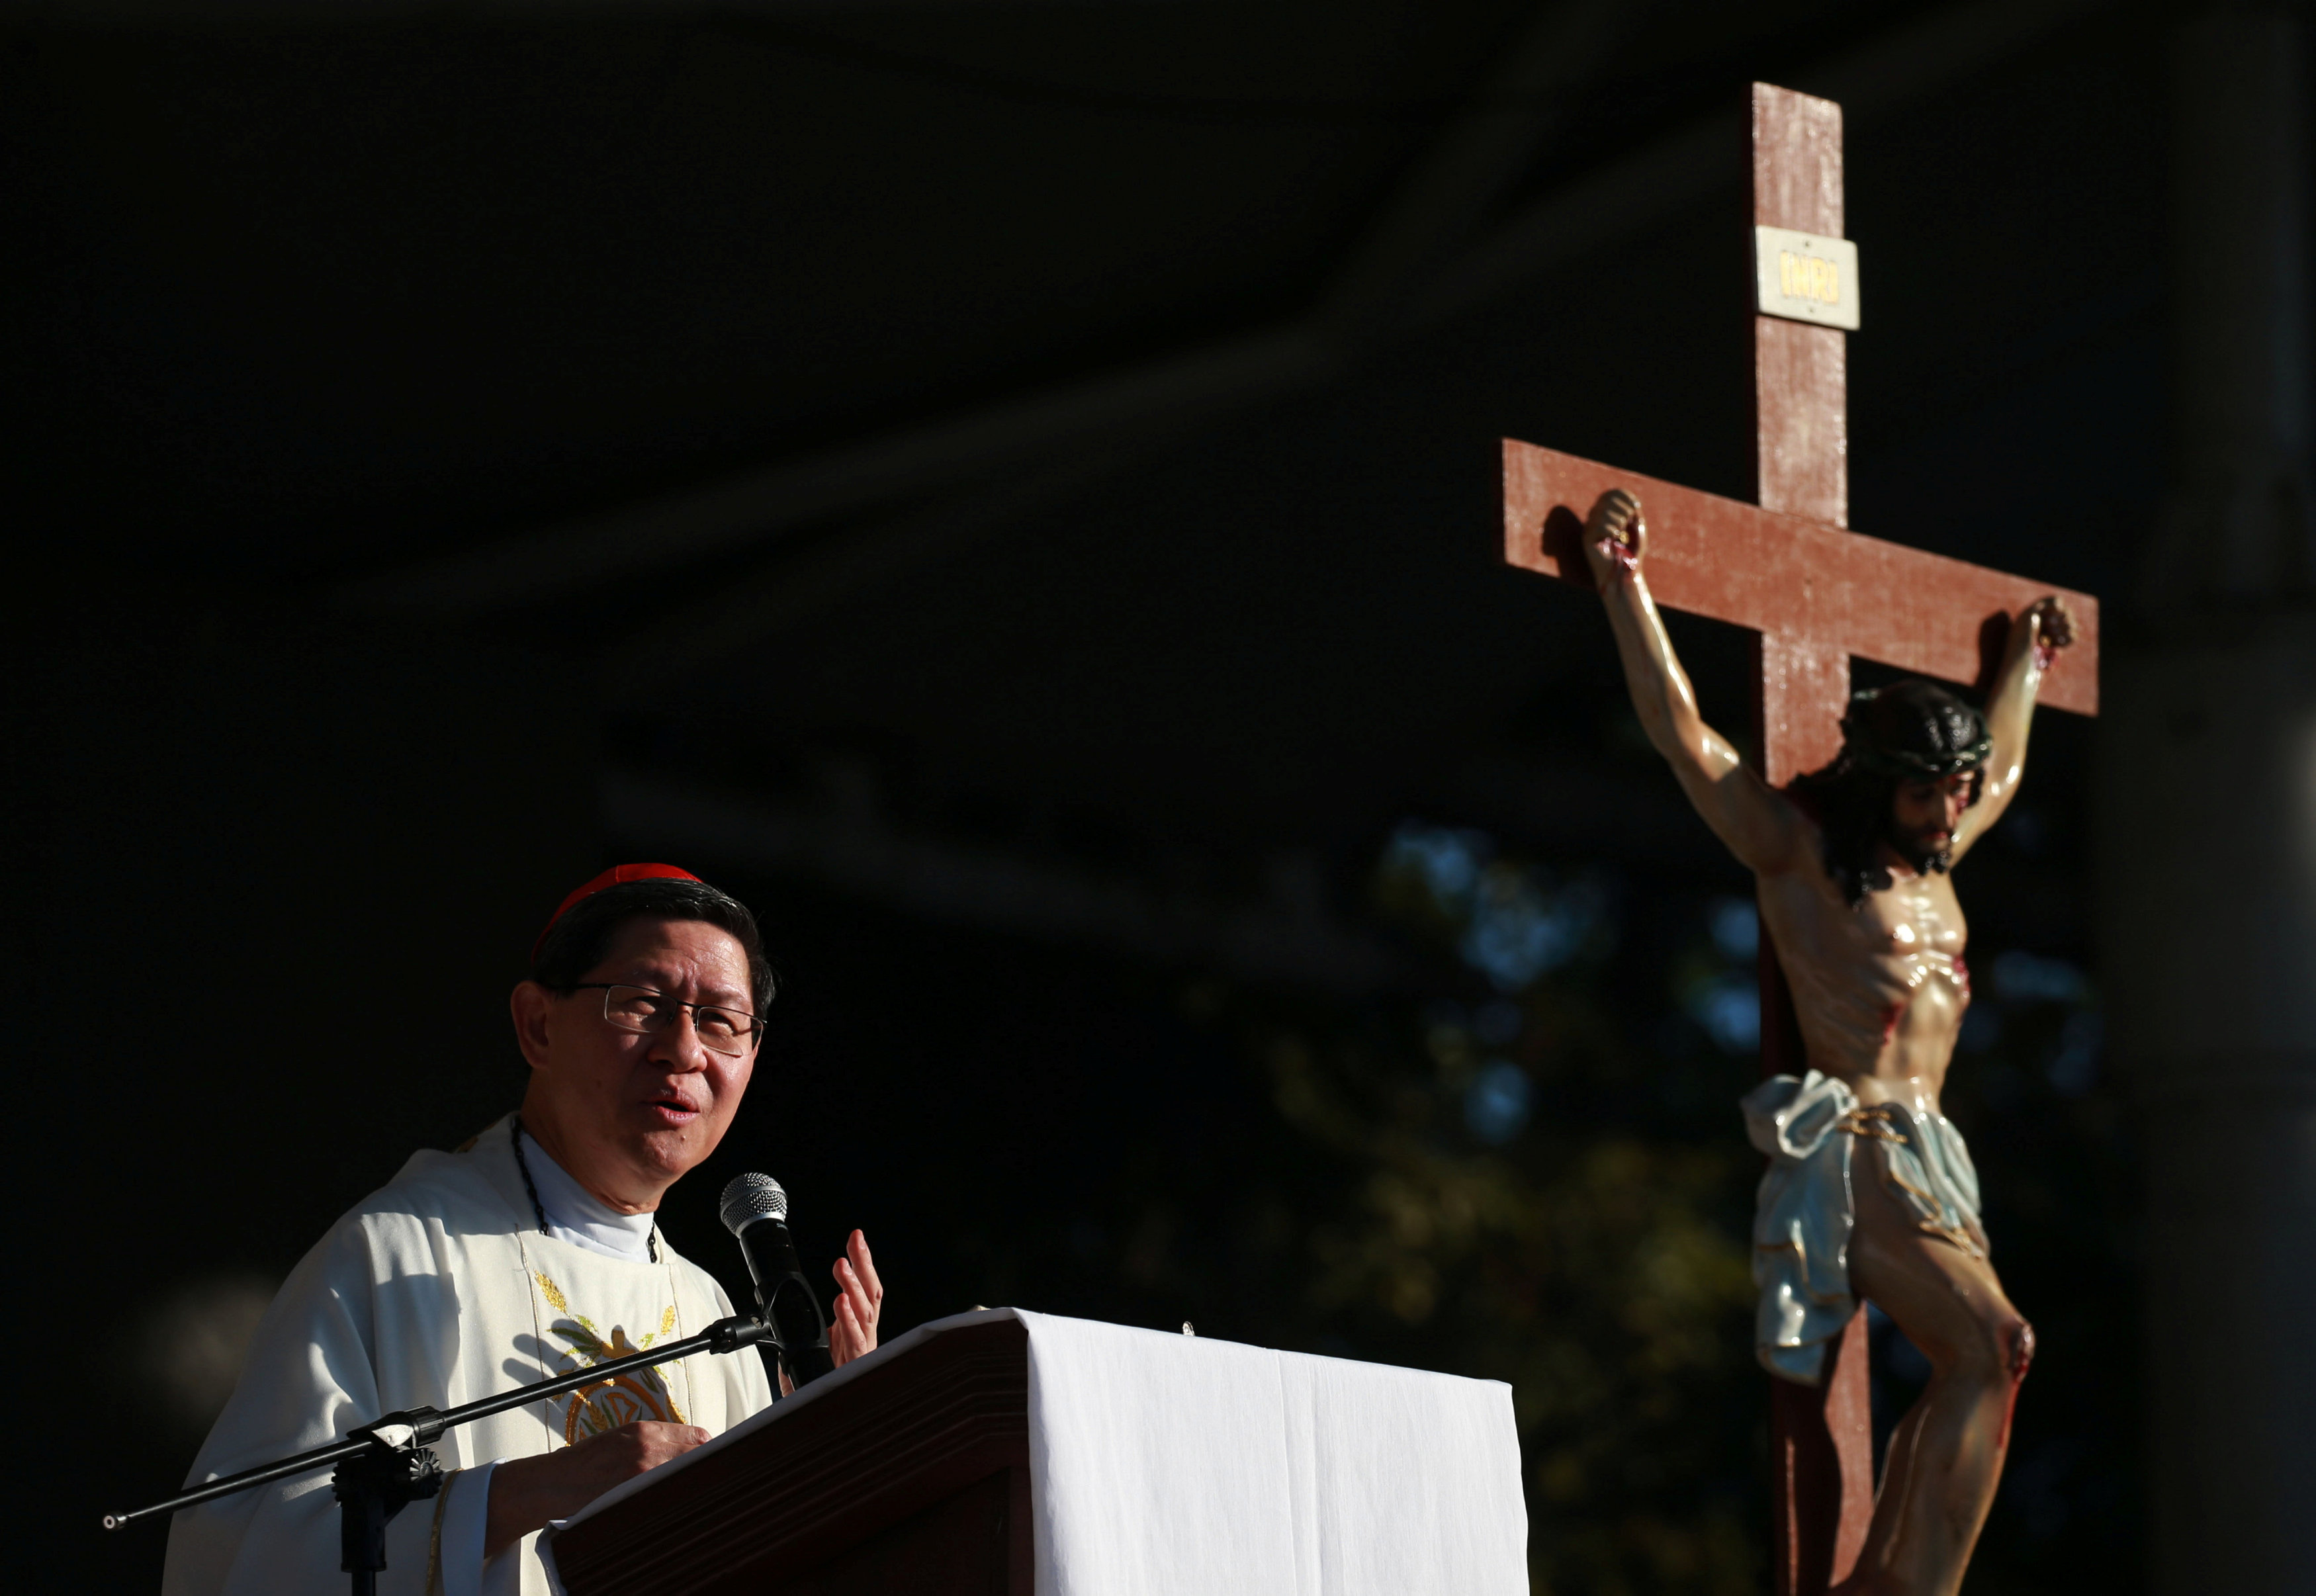 Cardenal filipino Tagle carga contra quienes cerraron los ojos ante abusos